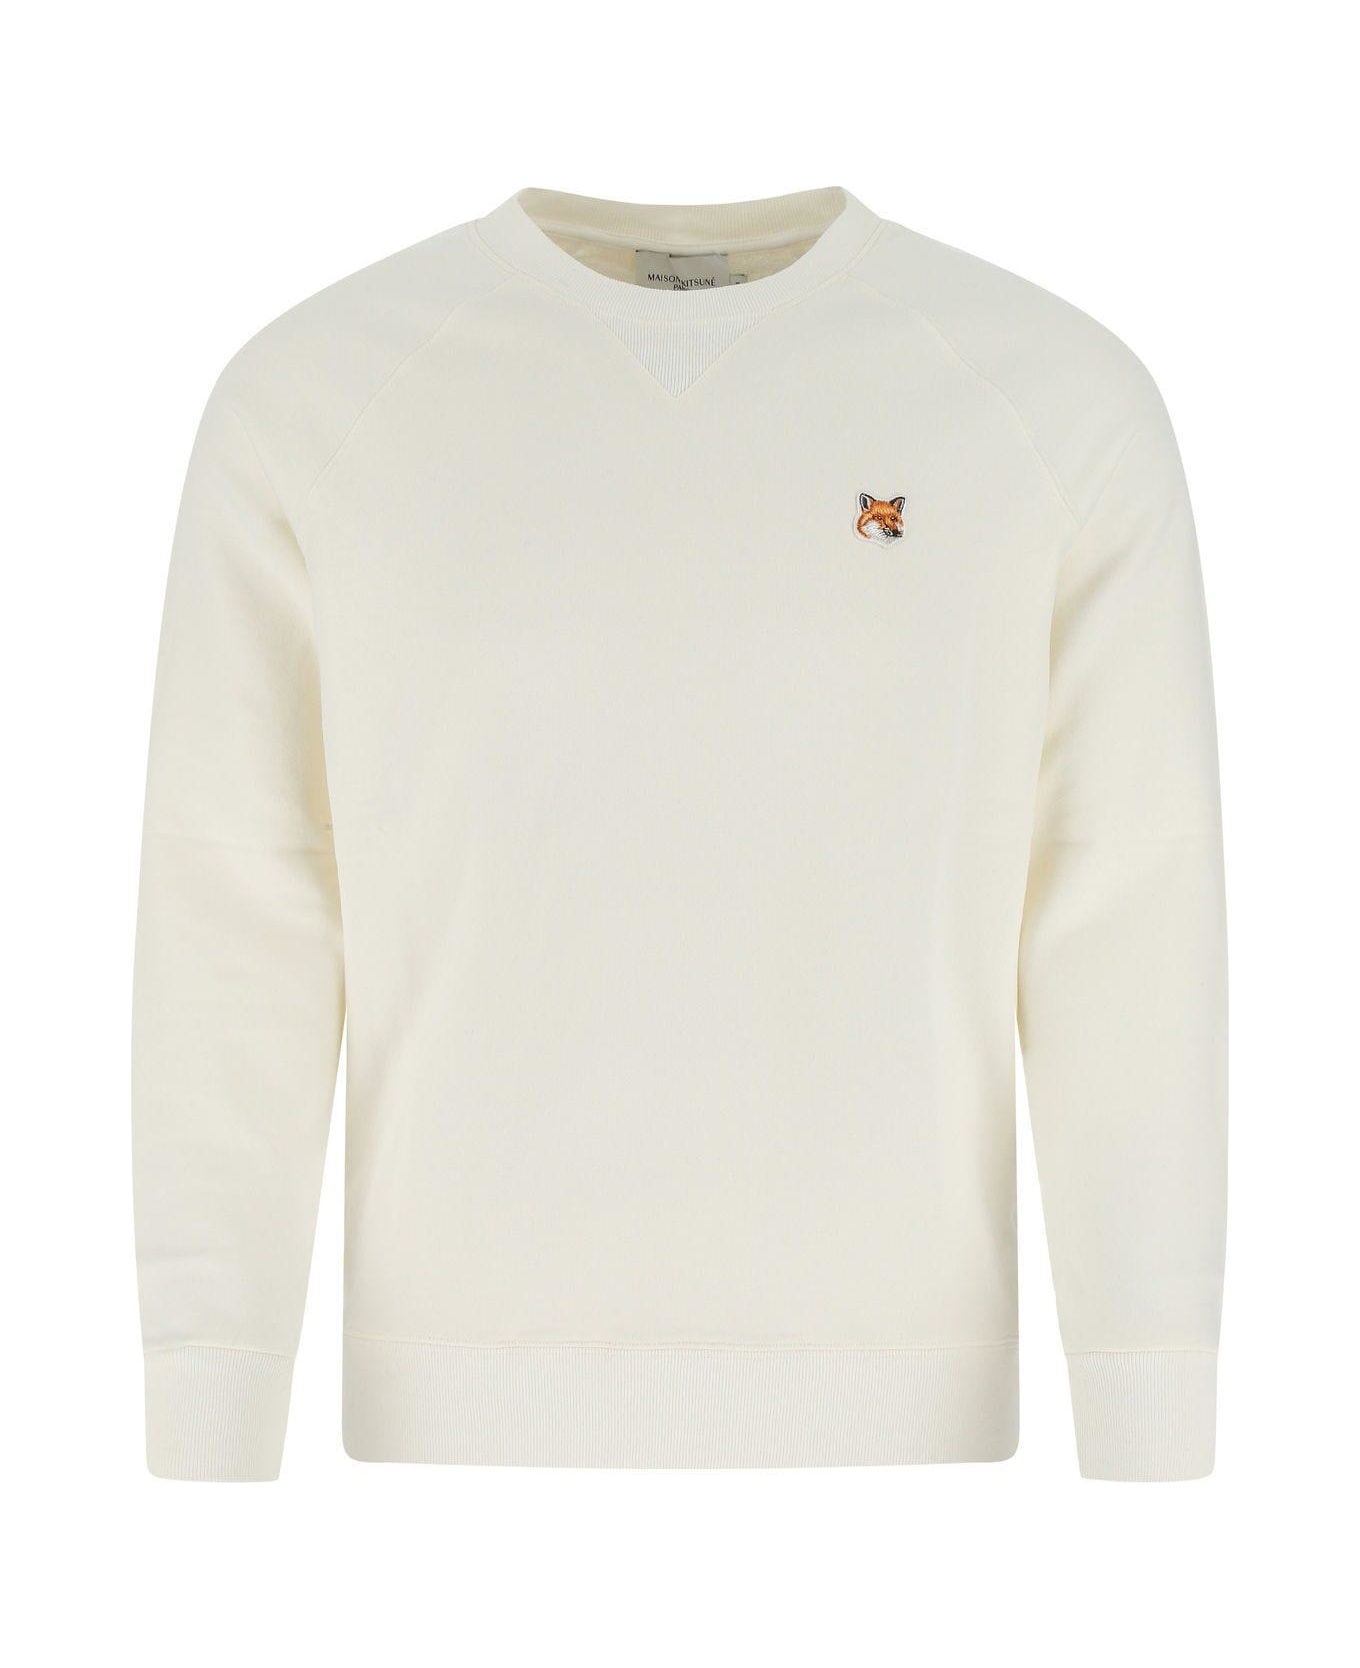 Maison Kitsuné White Cotton Sweatshirt - WHITE